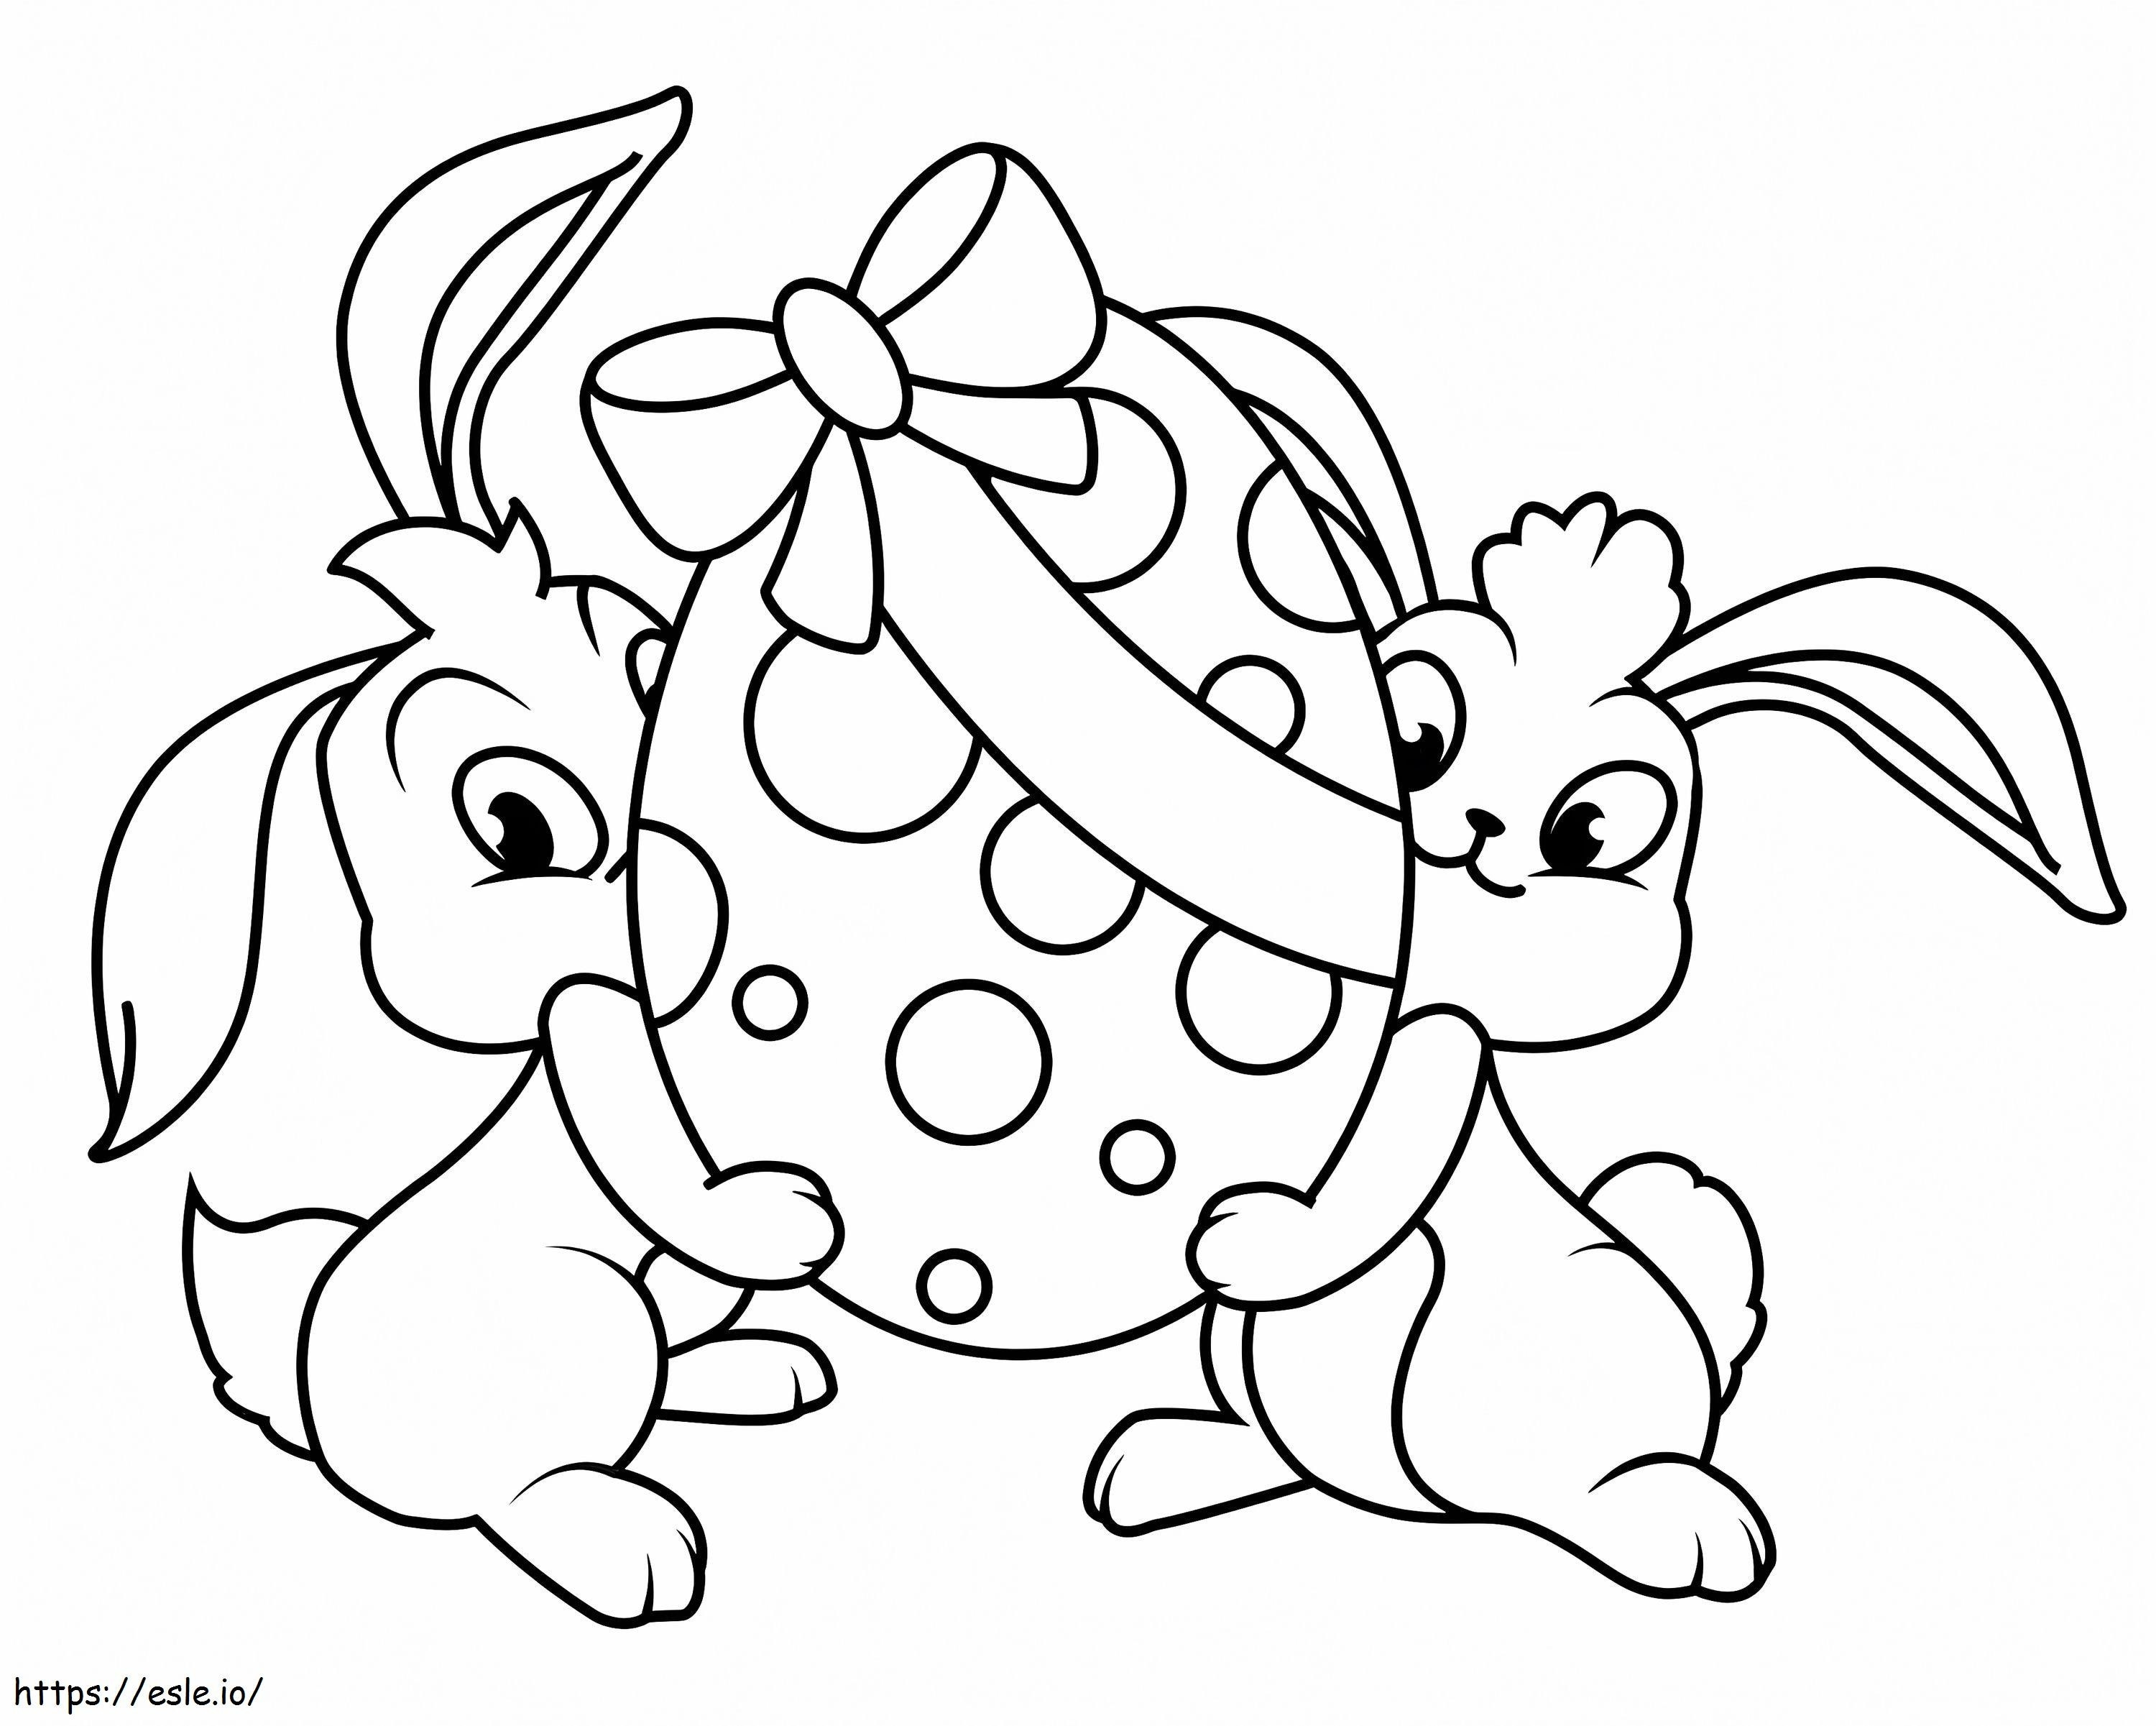 Coloriage Deux lapins de Pâques à imprimer dessin